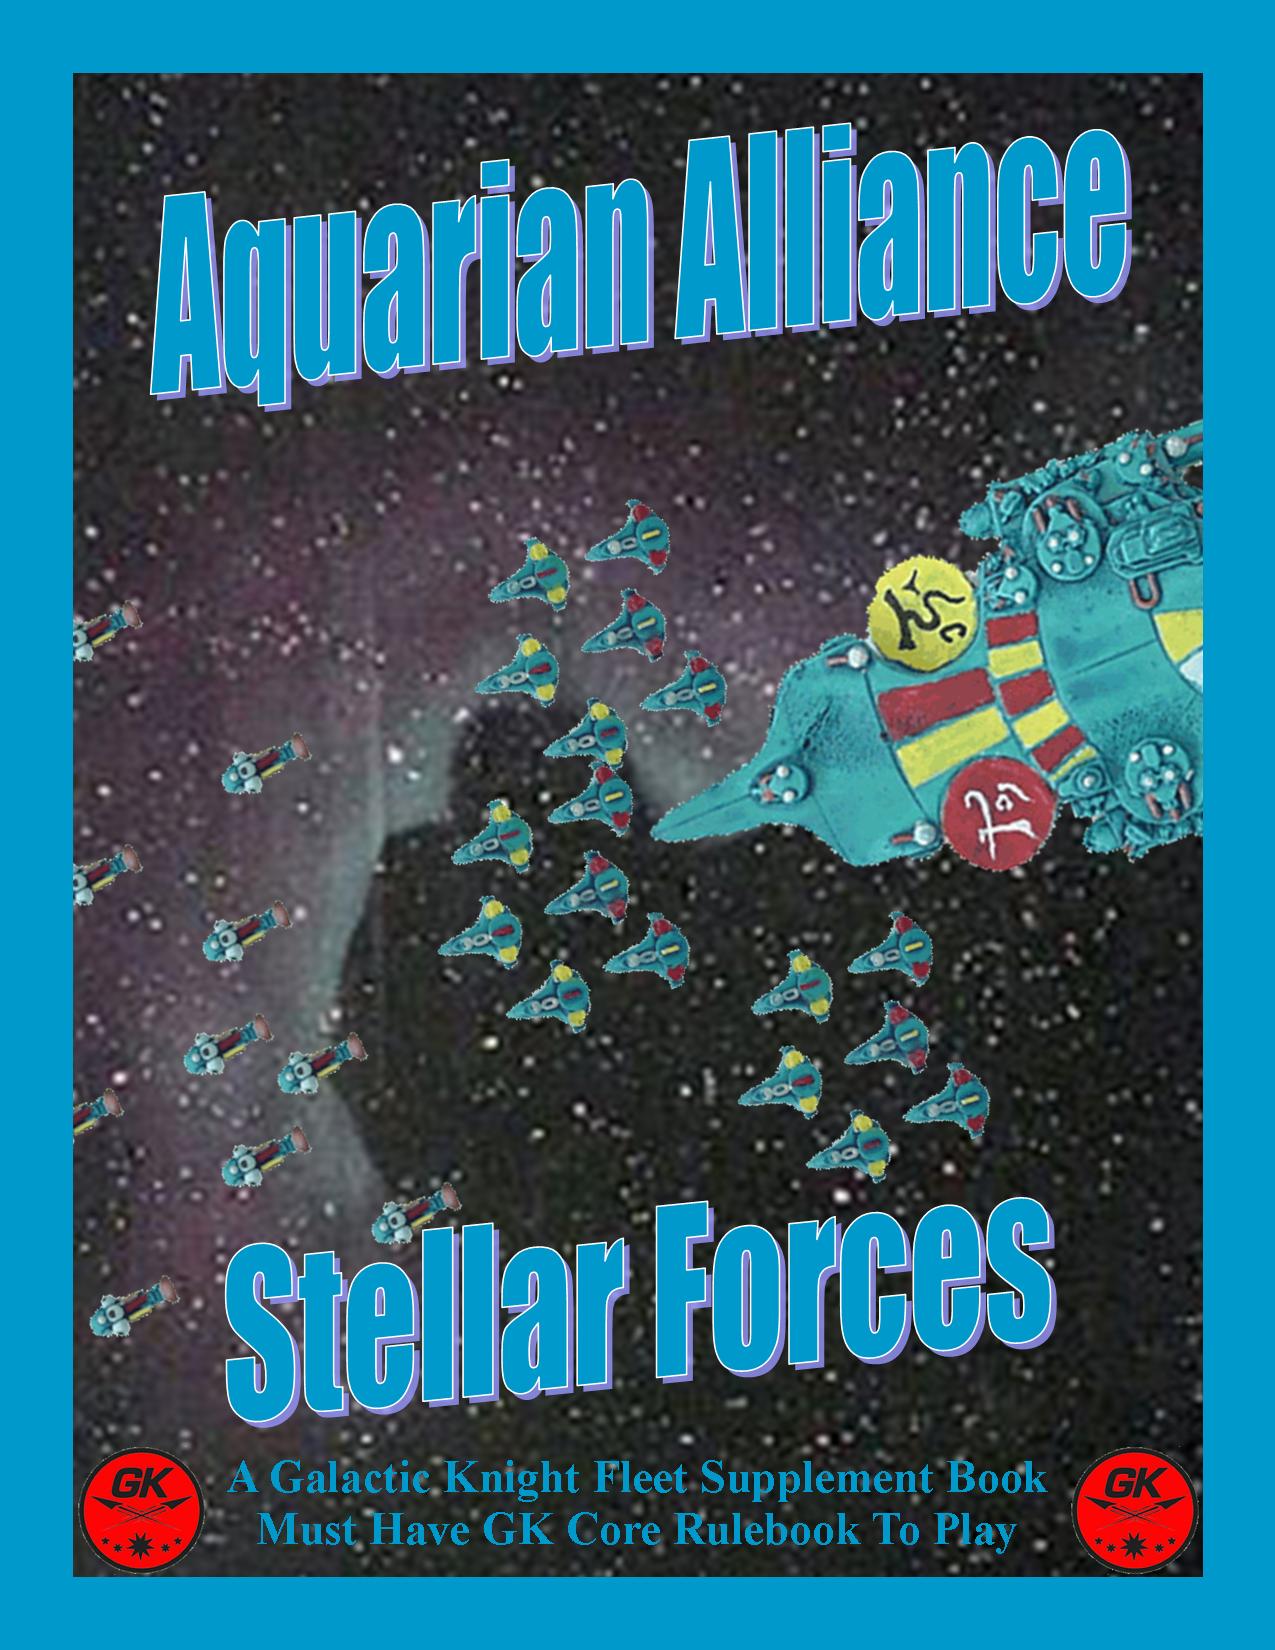 Aquarian Cover